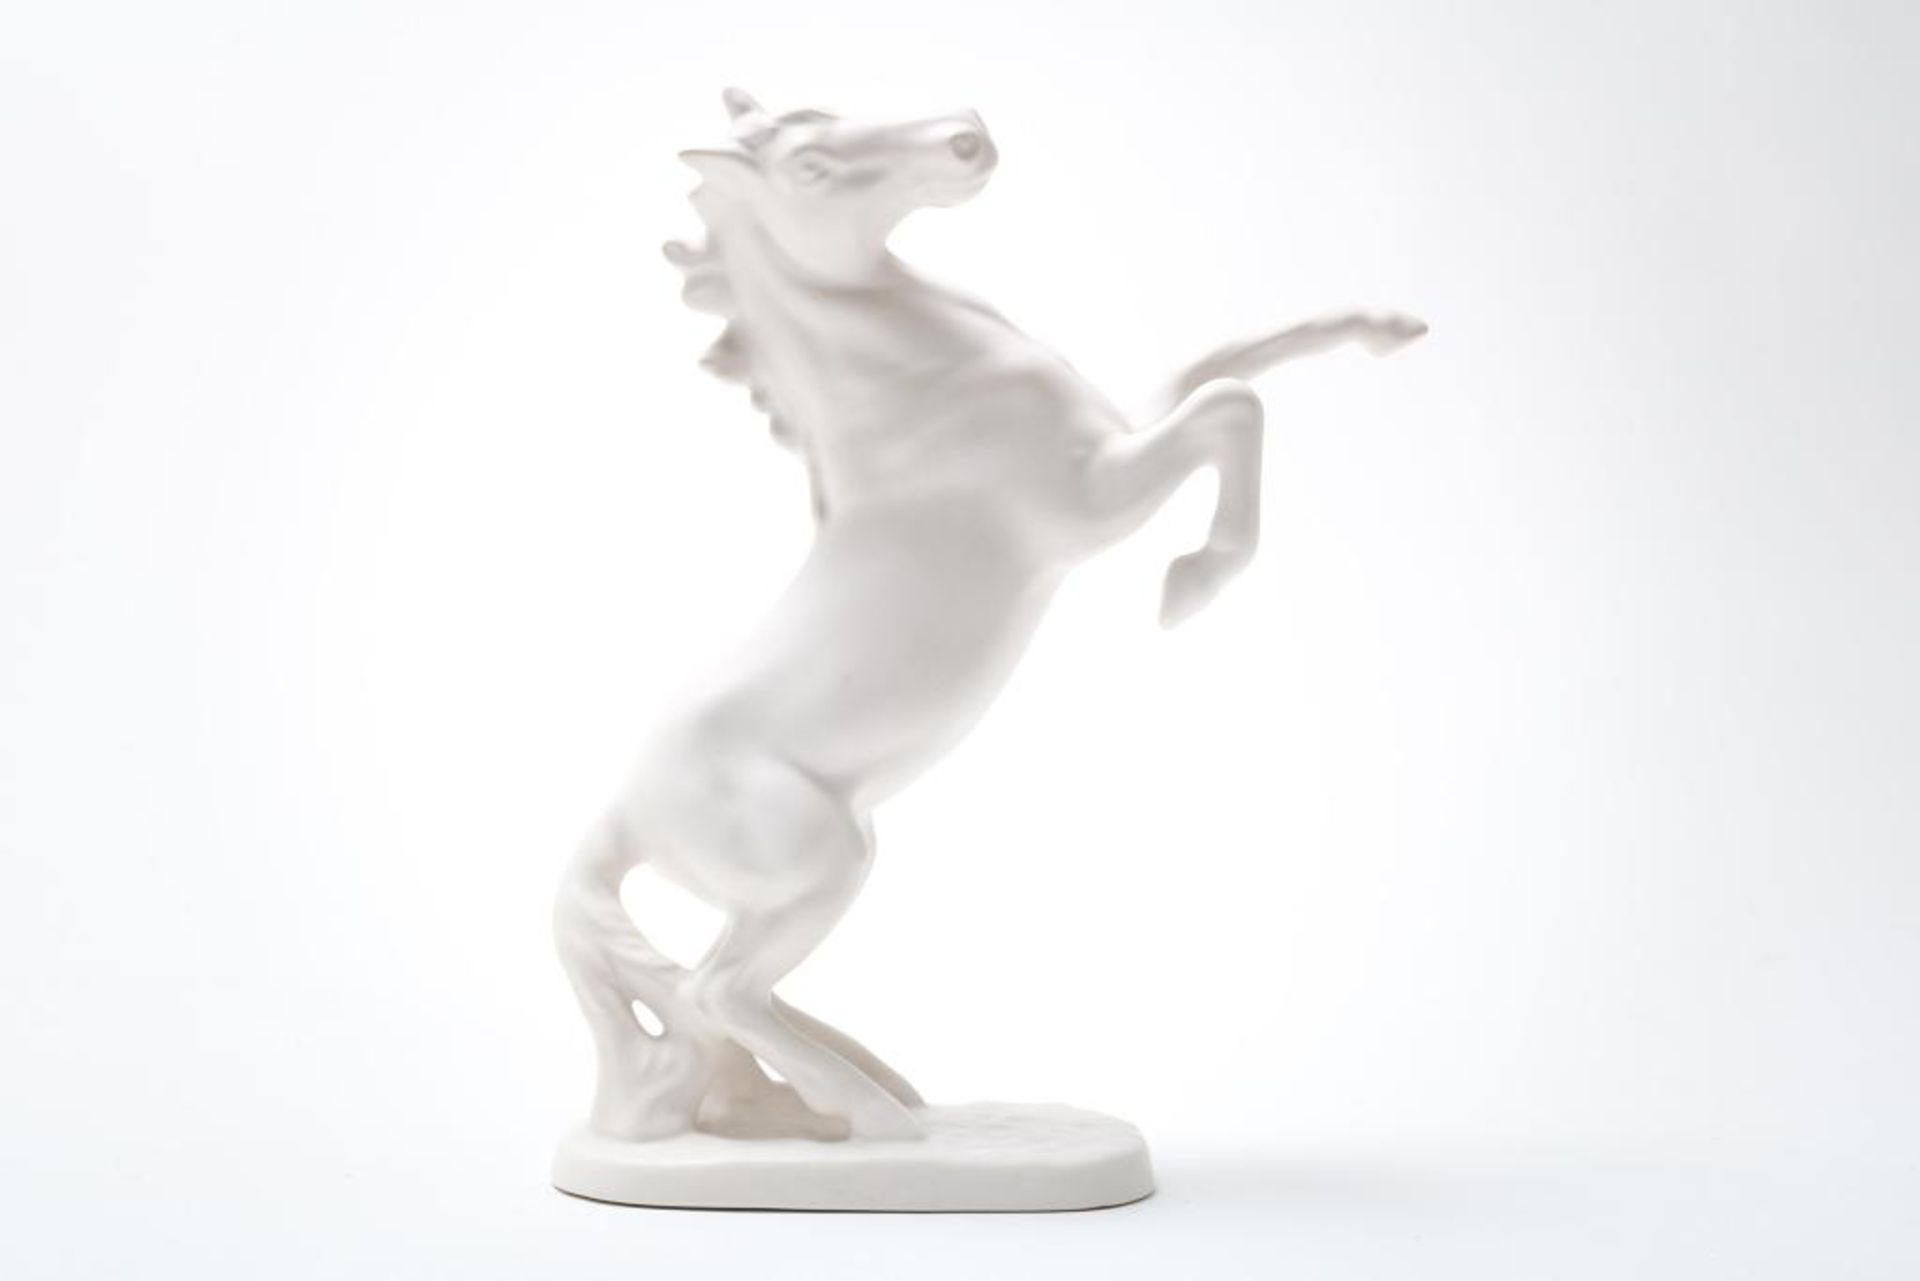 Wit keramieken sculptuur van paard